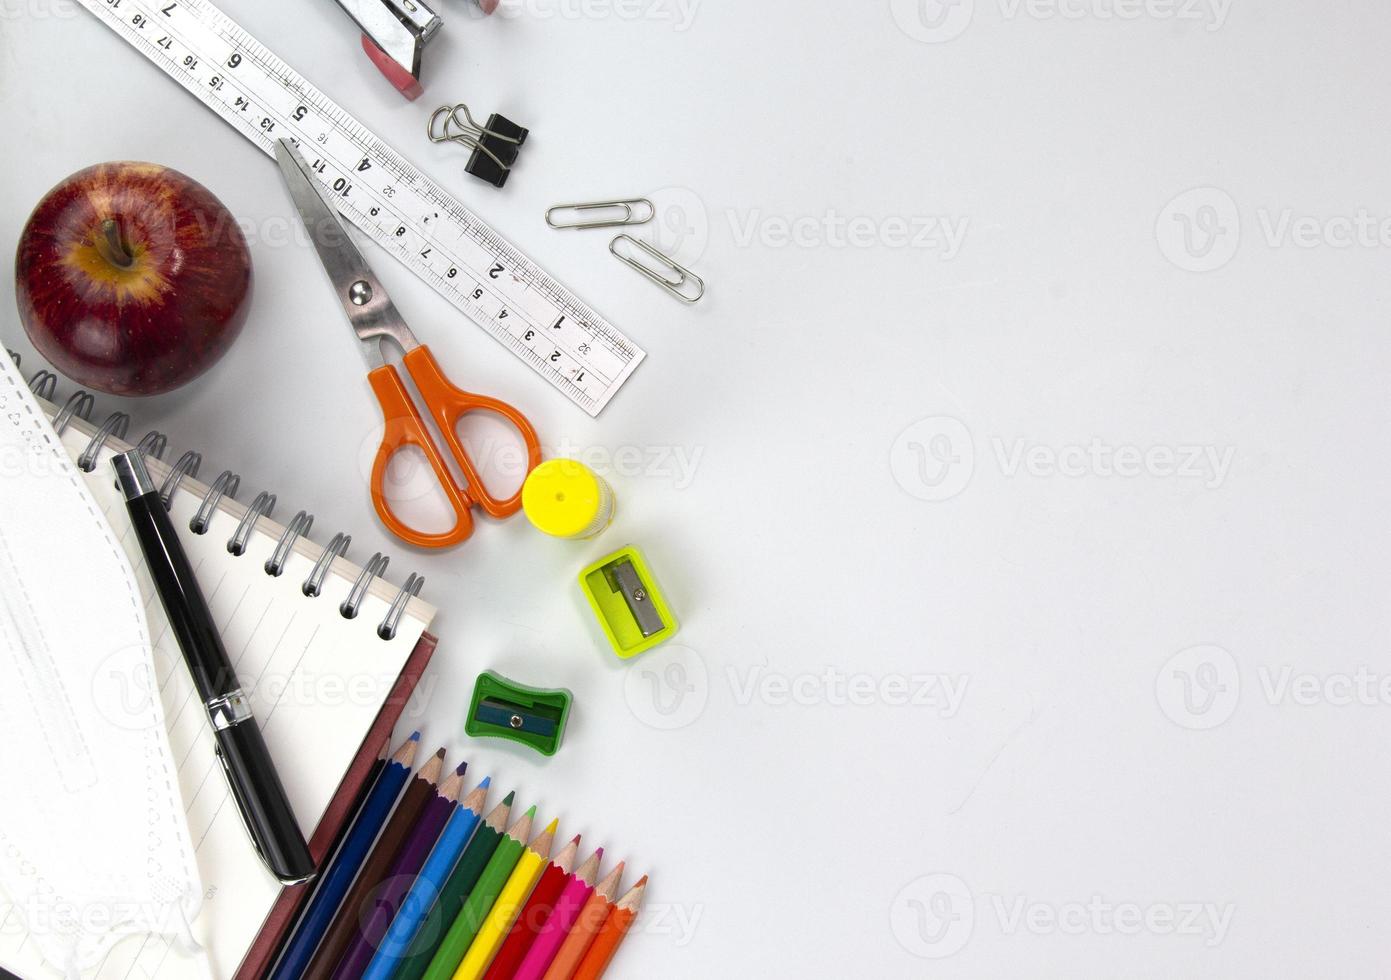 onderwijs elementen concepten, kleurpotloden, gezichtsmasker, paperclips, schaar, liniaal, appel geïsoleerd op een witte achtergrond. terug naar schoolconcept foto